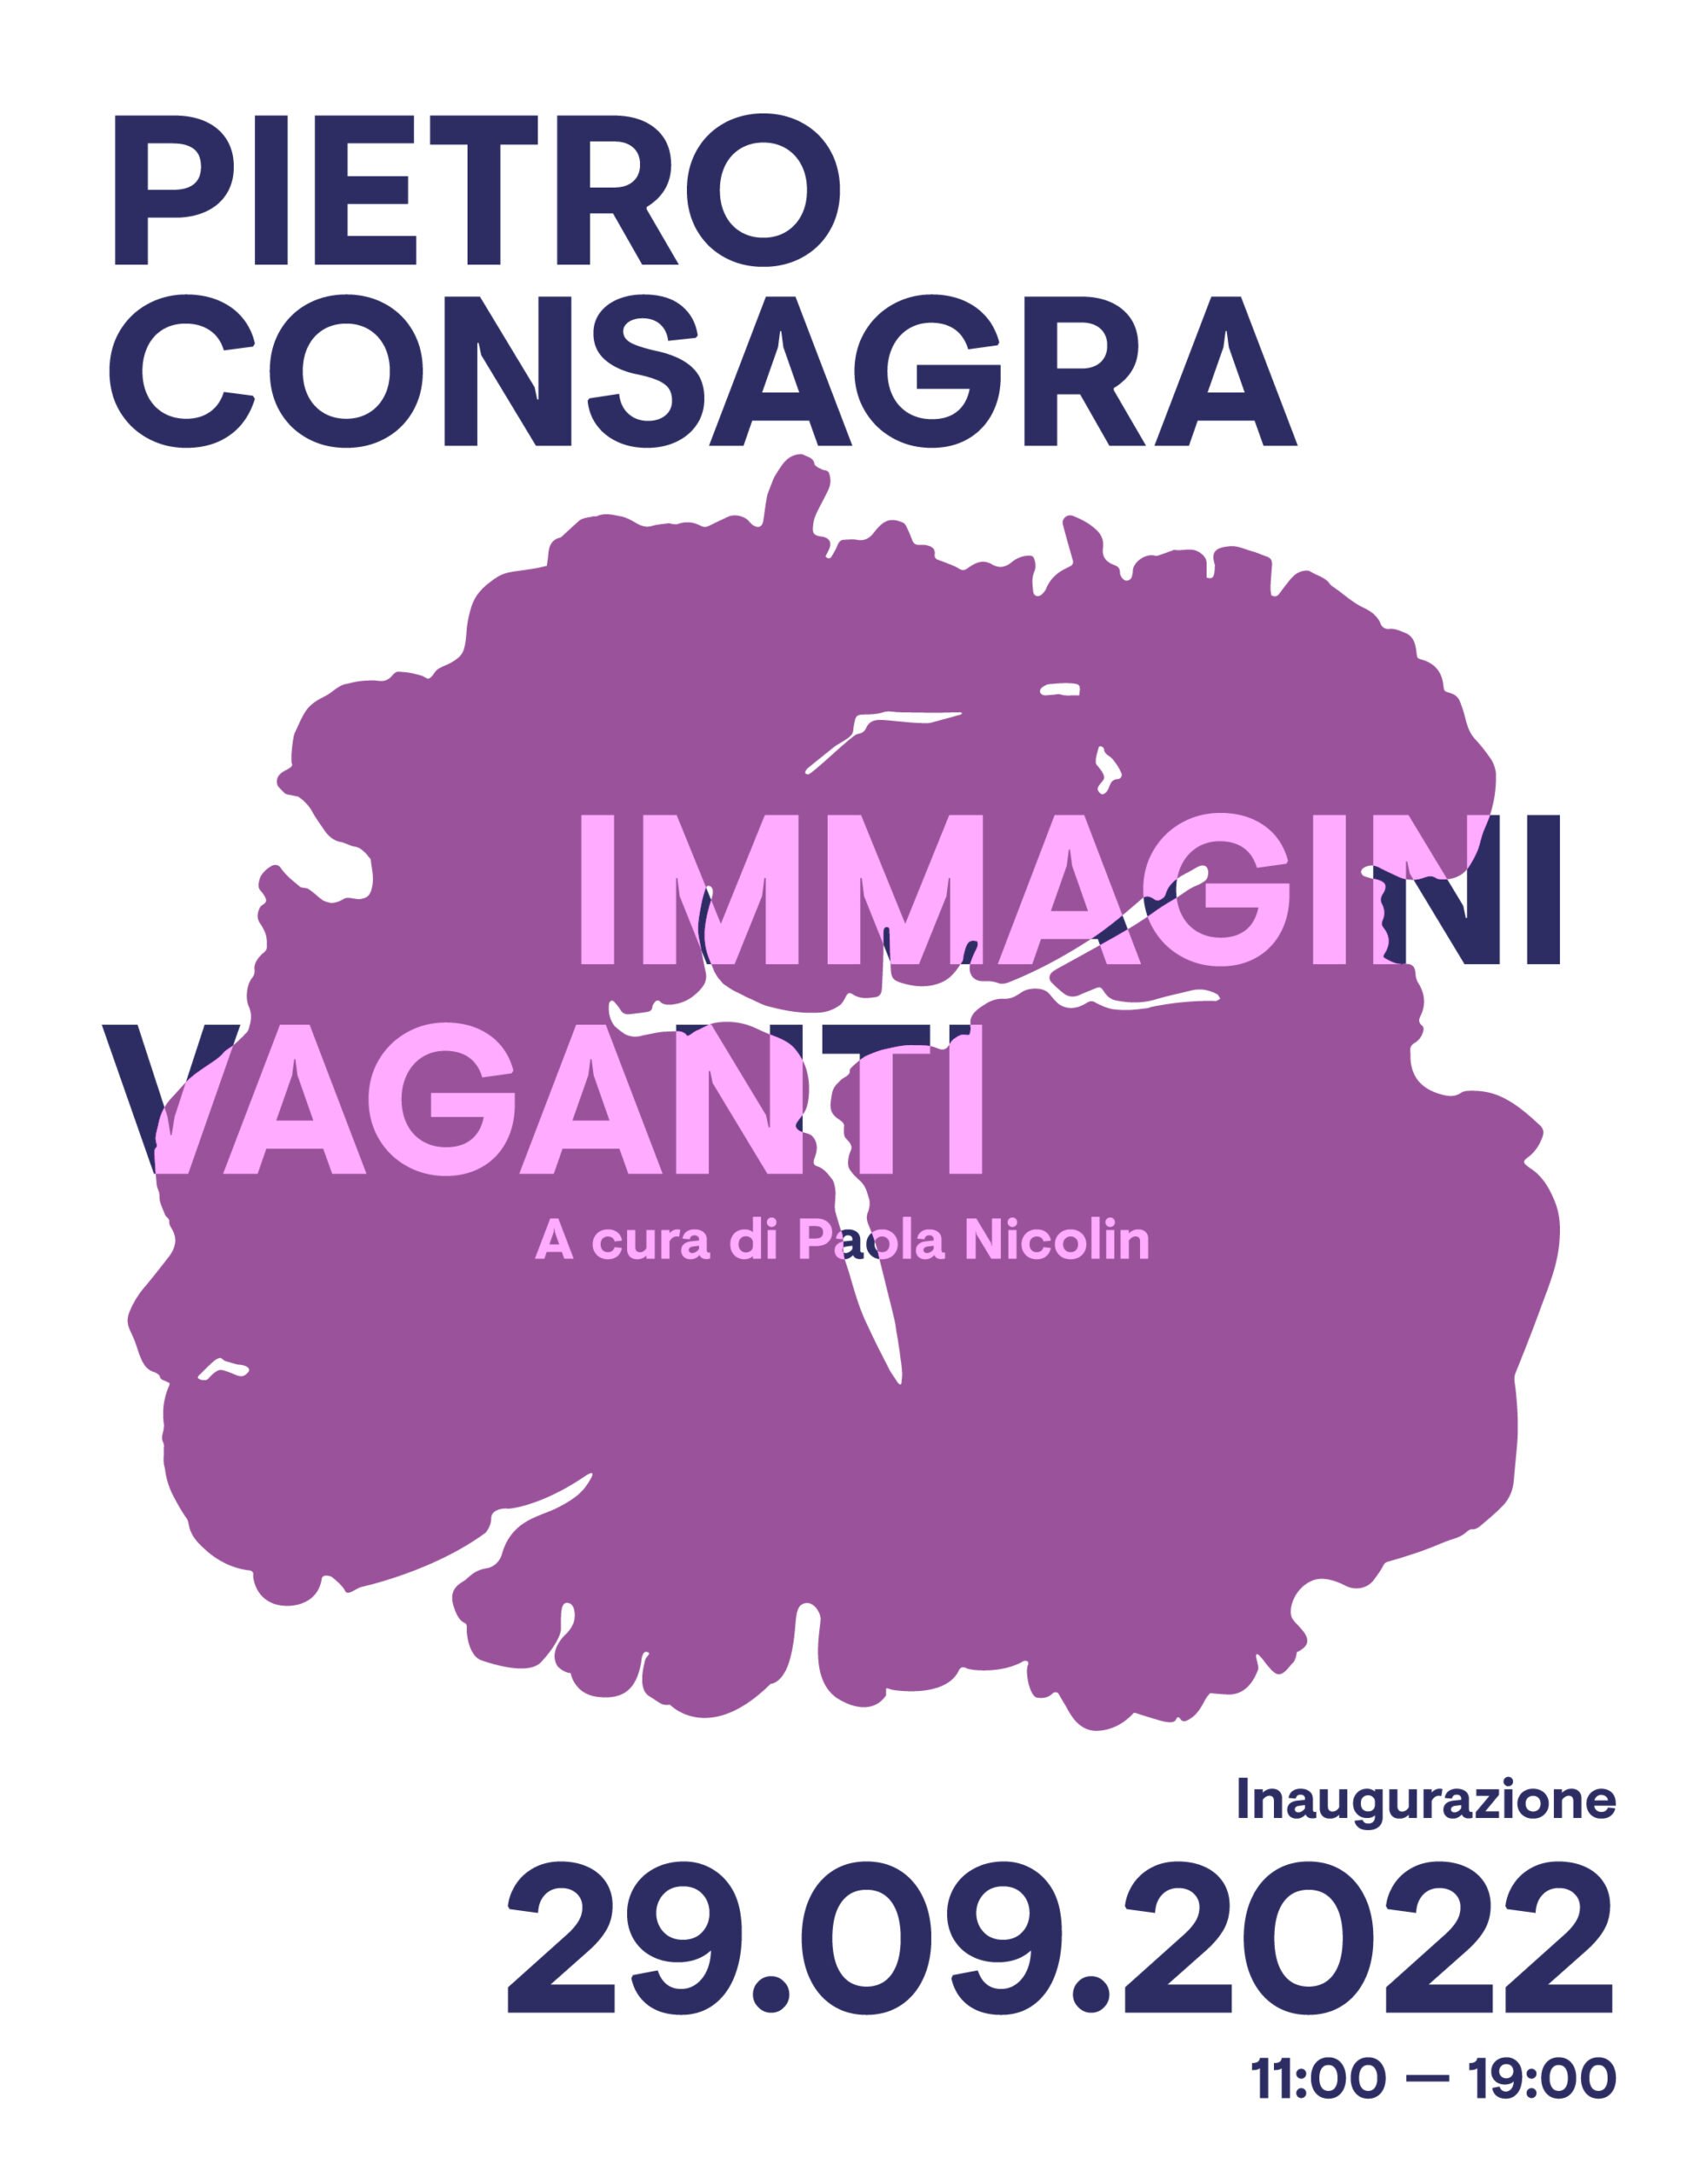 Pietro Consagra - Immagini Vaganti